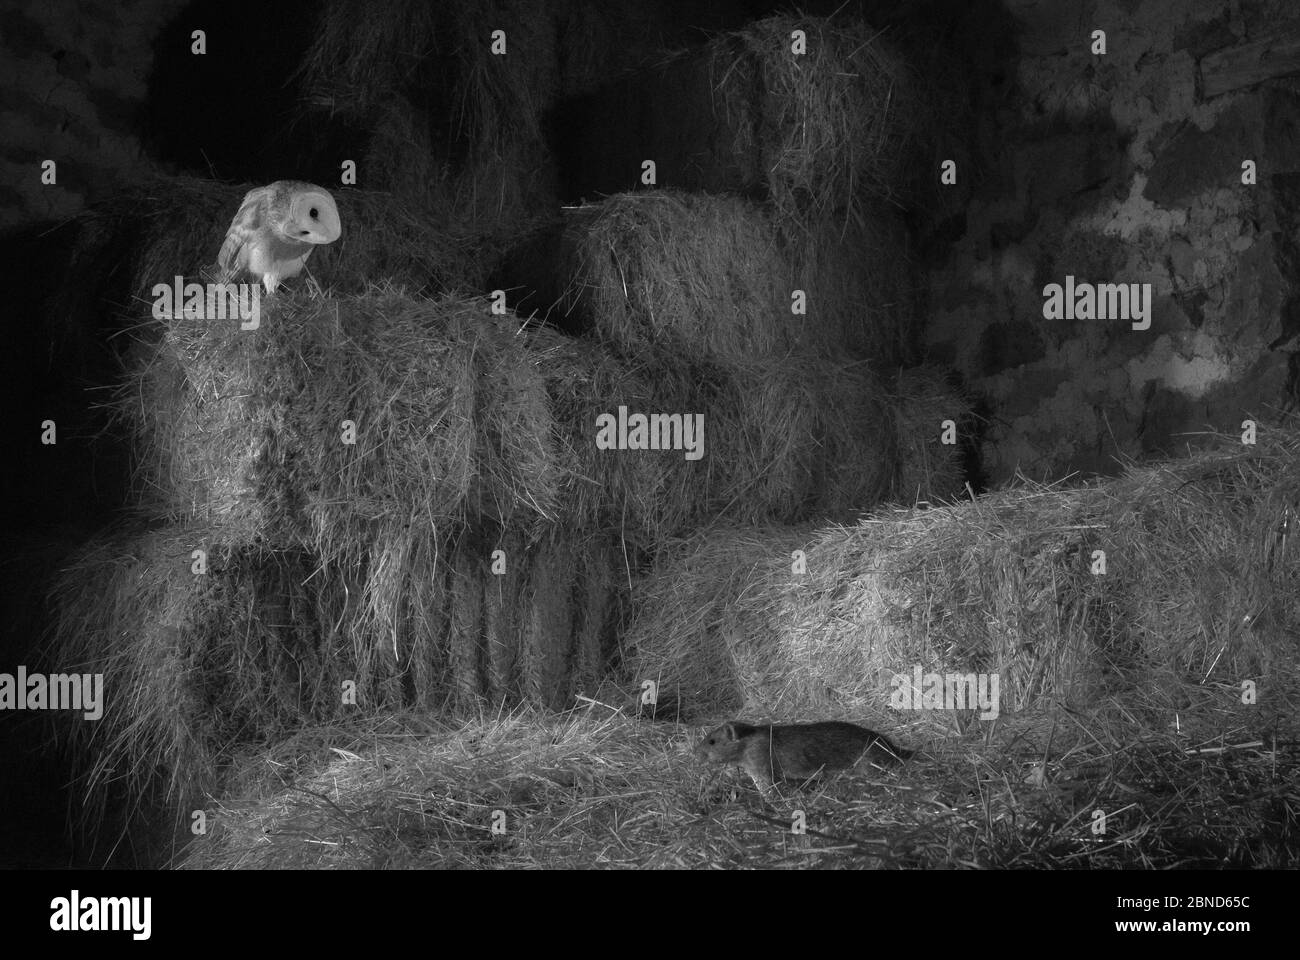 Le hibou de la grange (Tyto alba) parmi les piles de foin observant le rat brun (Rattus norvegicus) avec la tête inclinée sur le côté. Mayenne, pays de Loire, France. Banque D'Images